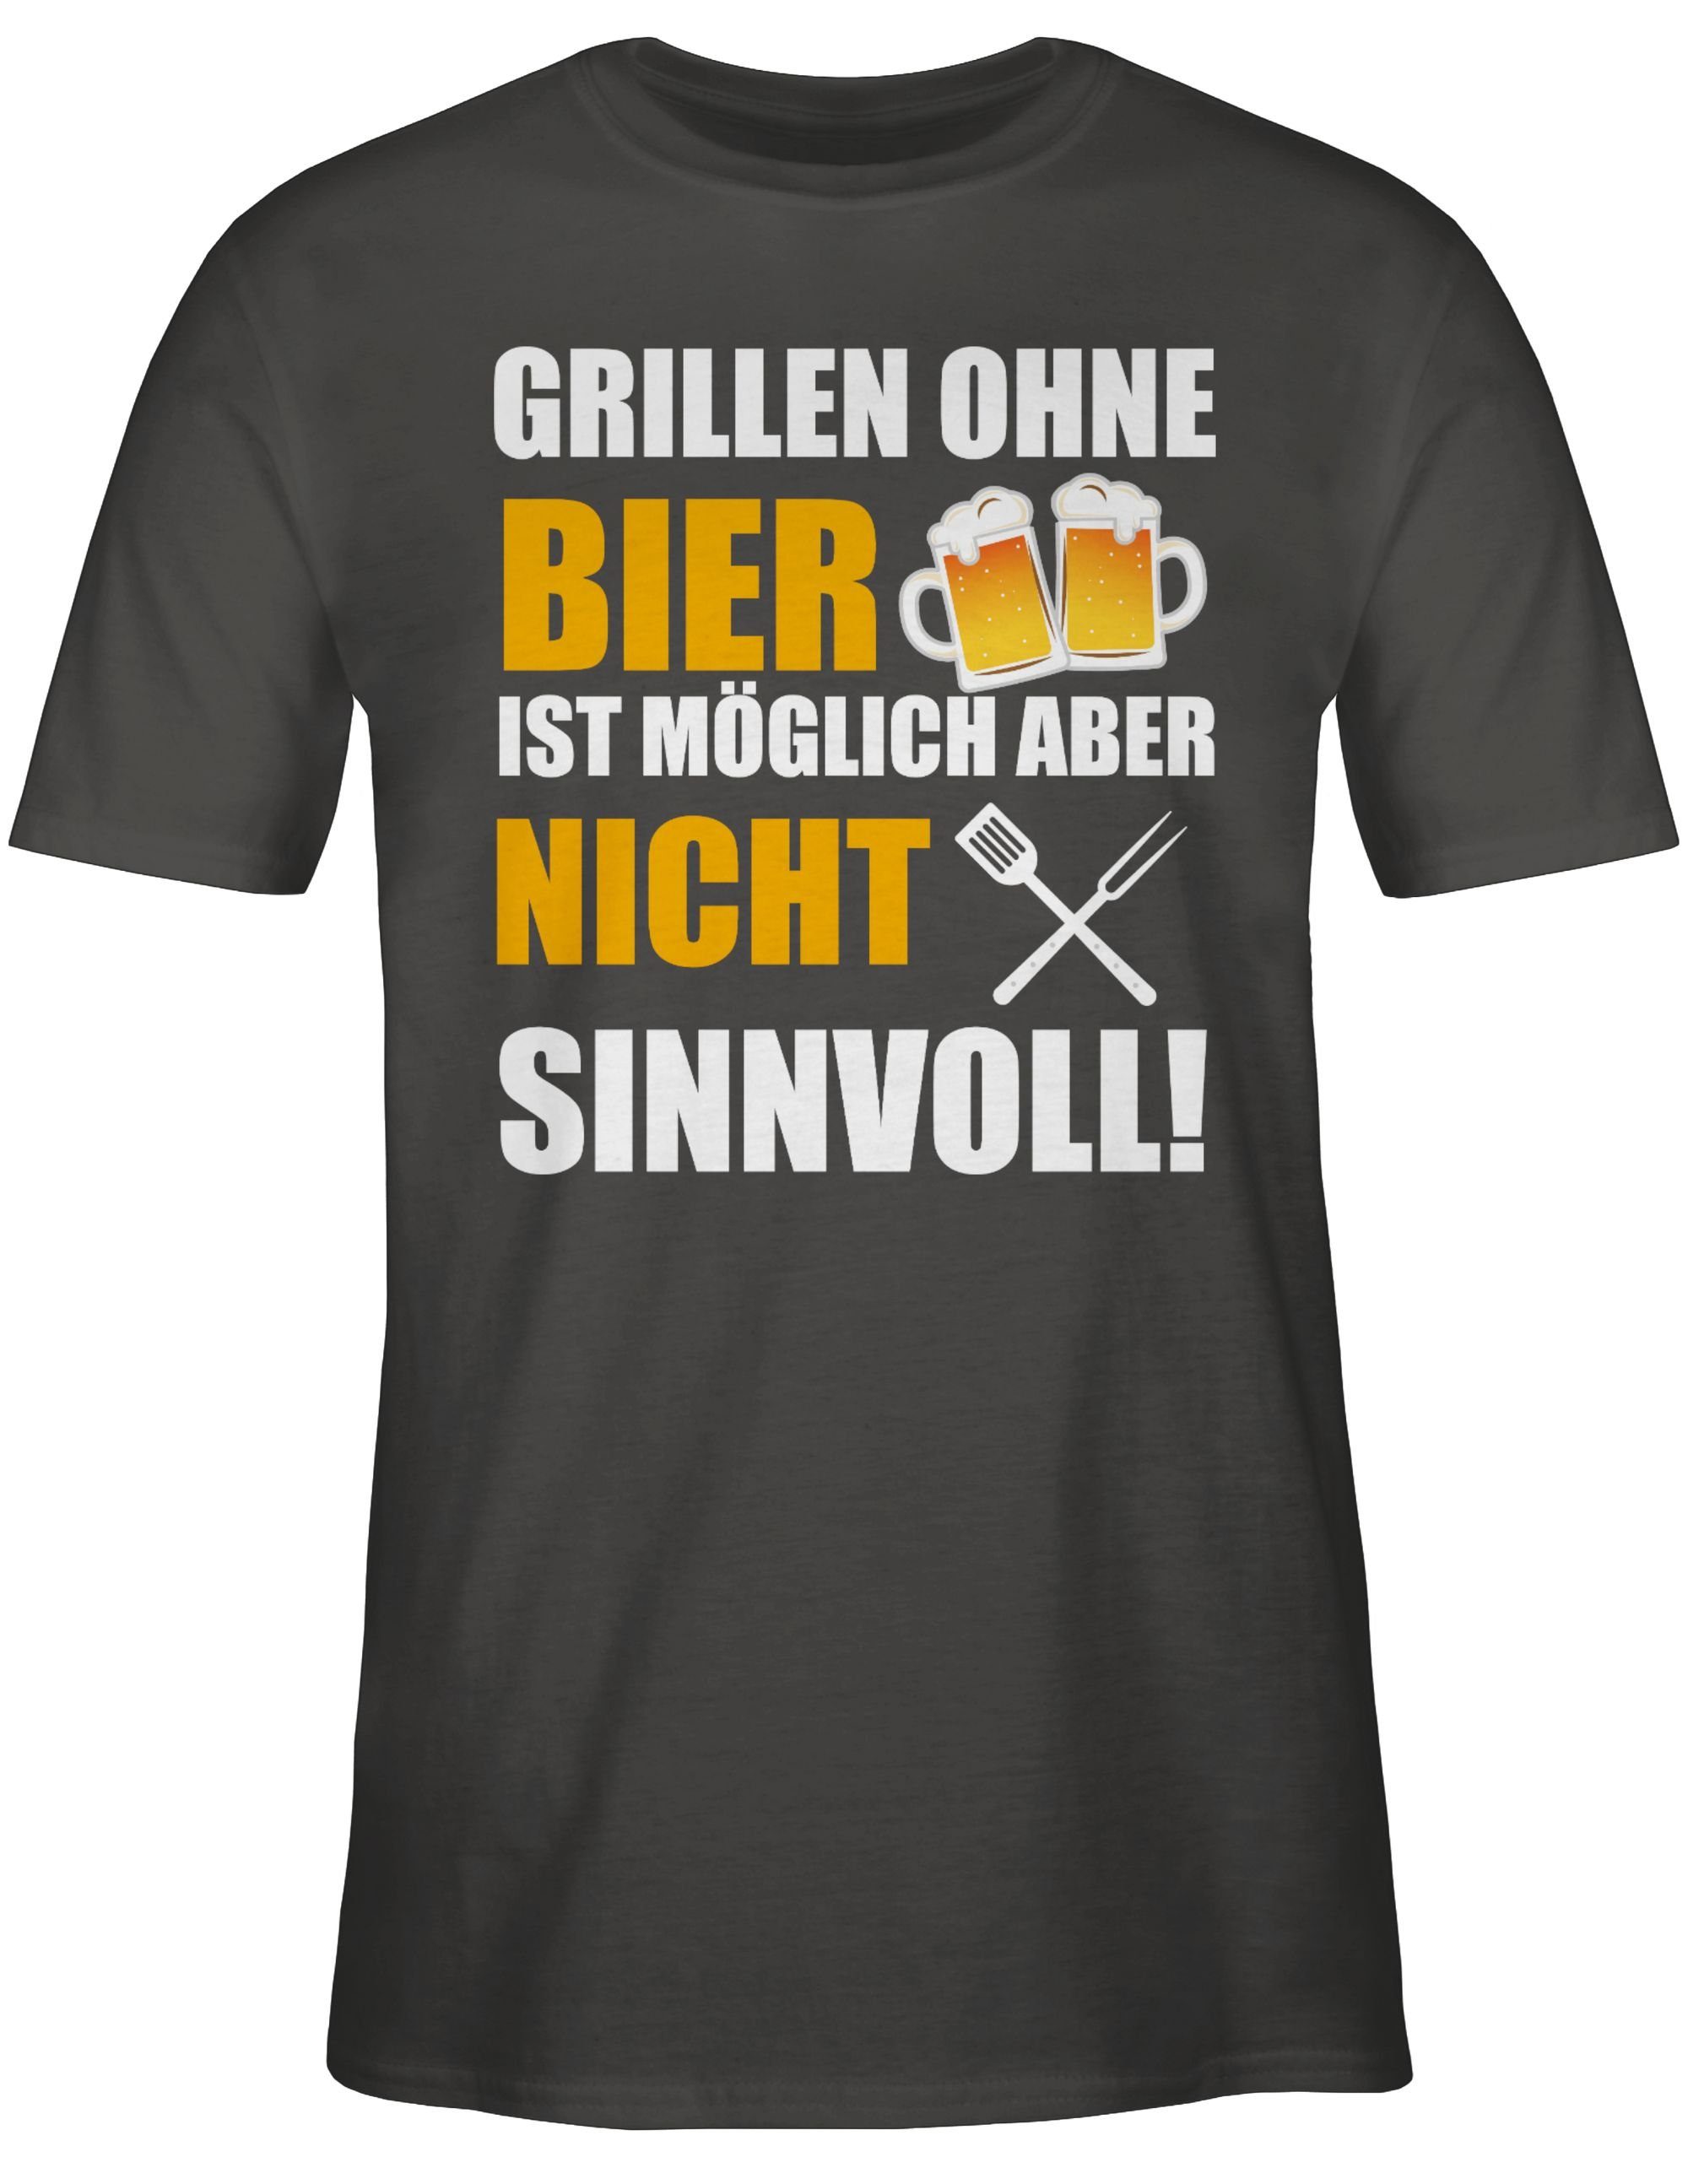 03 Dunkelgrau Bier ist Grillen ohne Grillen sinnvoll Geschenk nicht & Grillzubehör weiß Shirtracer T-Shirt